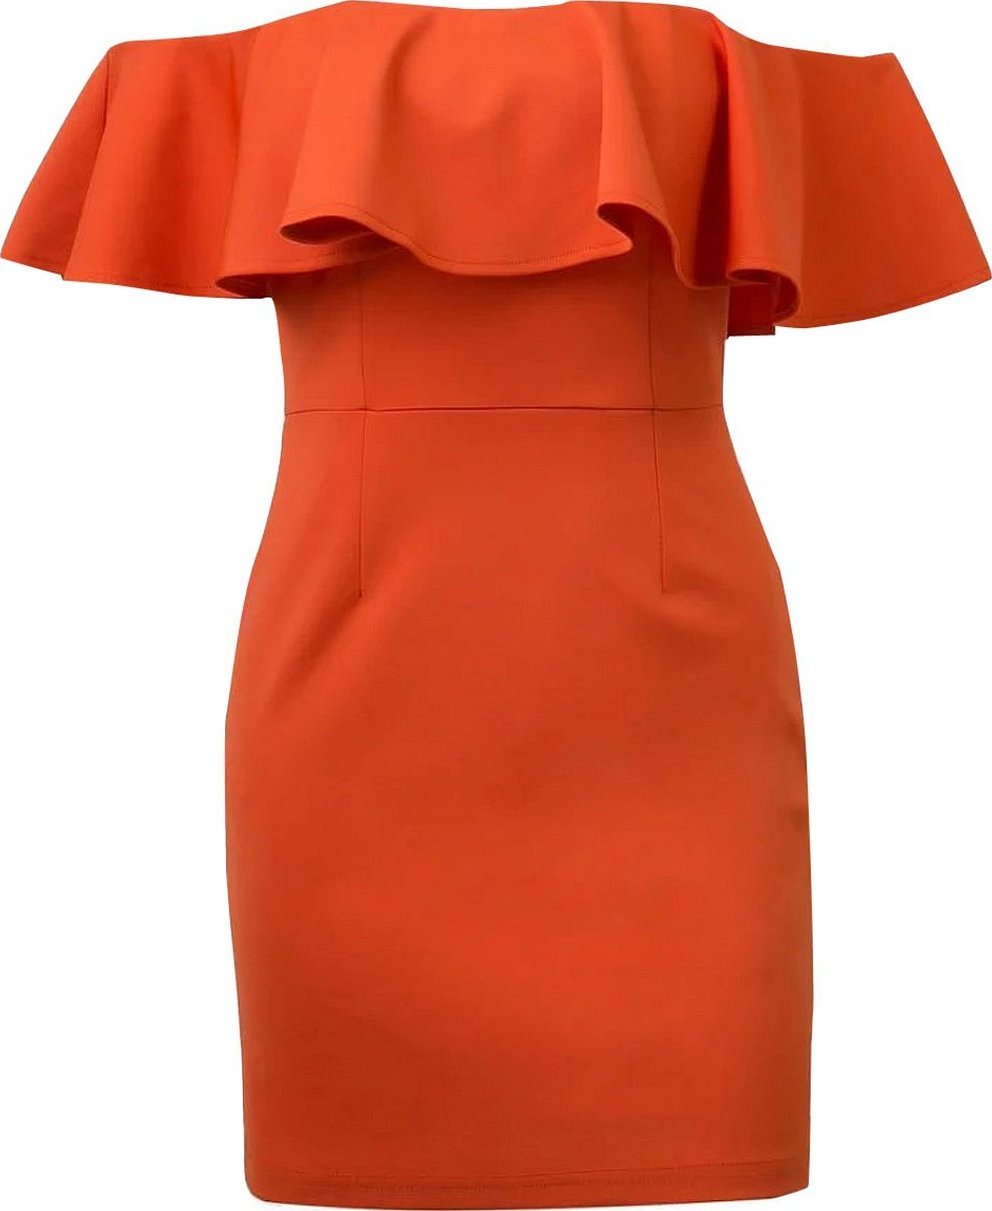 Платье с открытыми плечами и воланами оранжевое